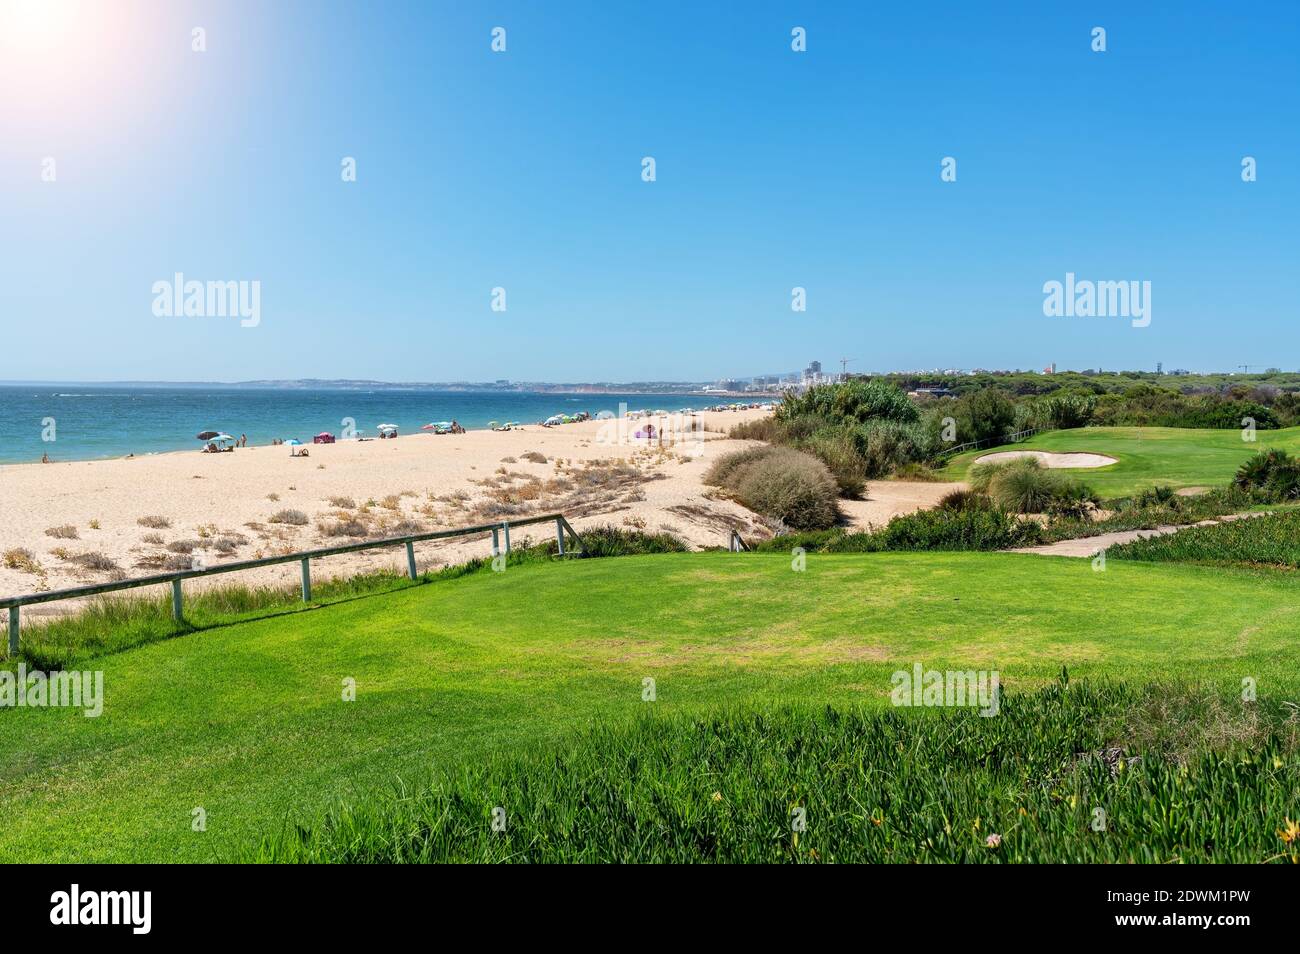 Resort spiagge di lusso, campi da golf con palme, con vista sul mare per i turisti a rilassarsi. Foto Stock